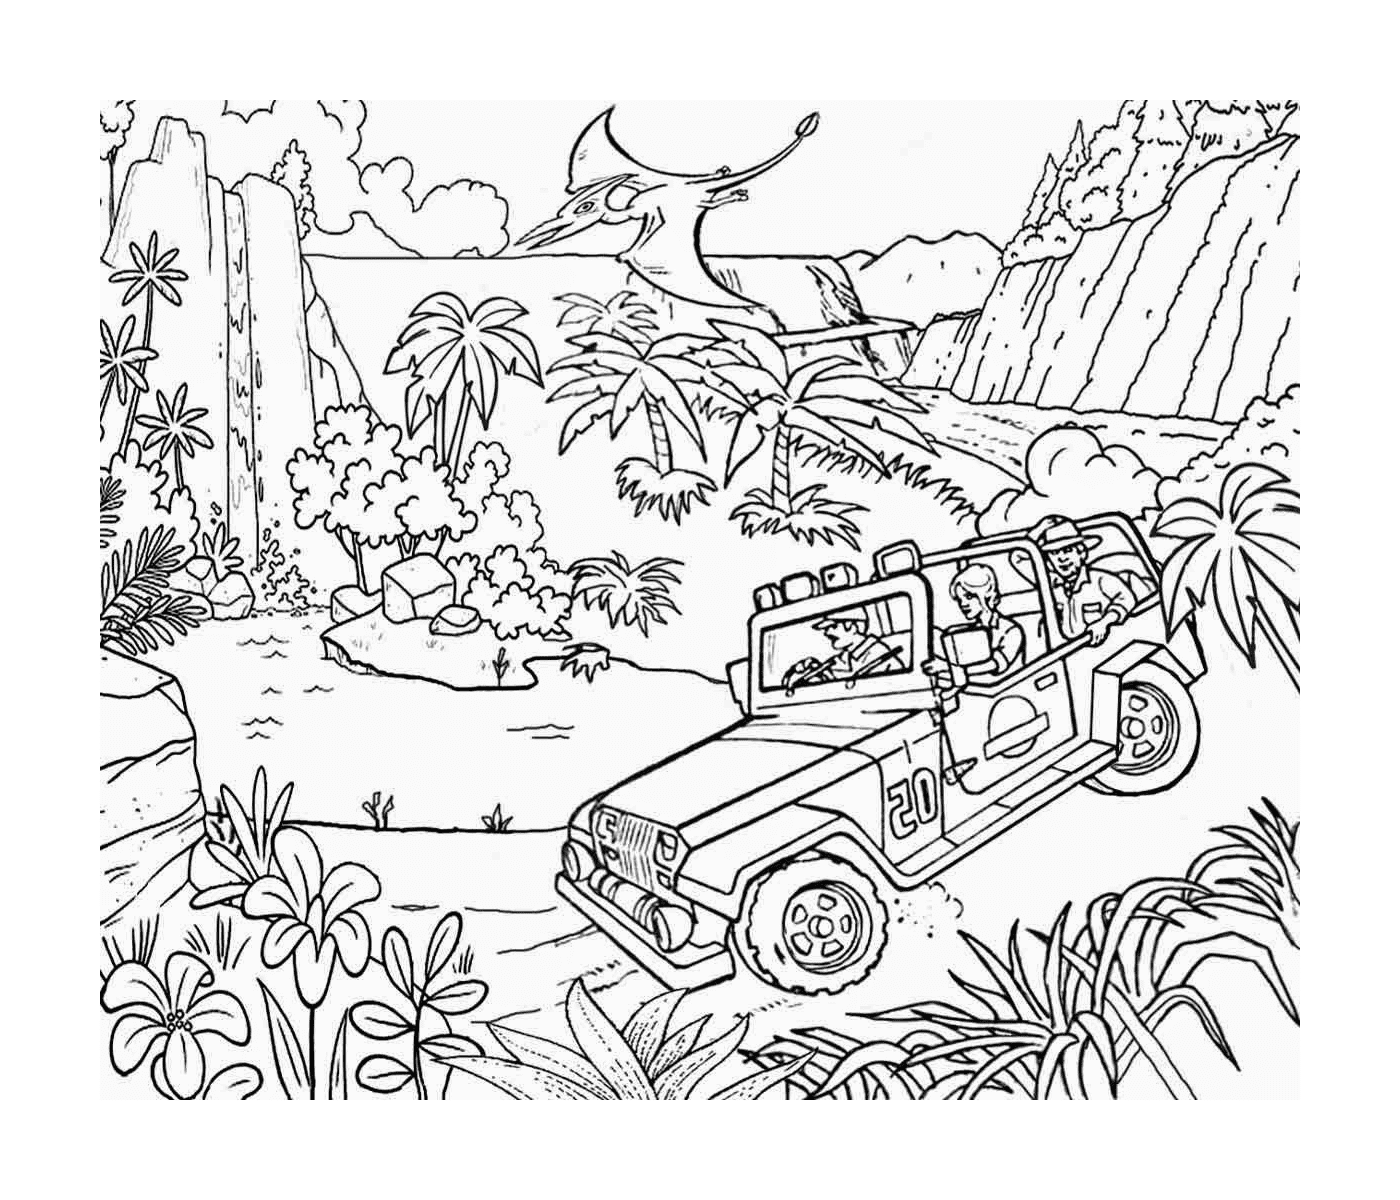  Jeep nella giungla di Jurassic Park, un'avventura in corso 